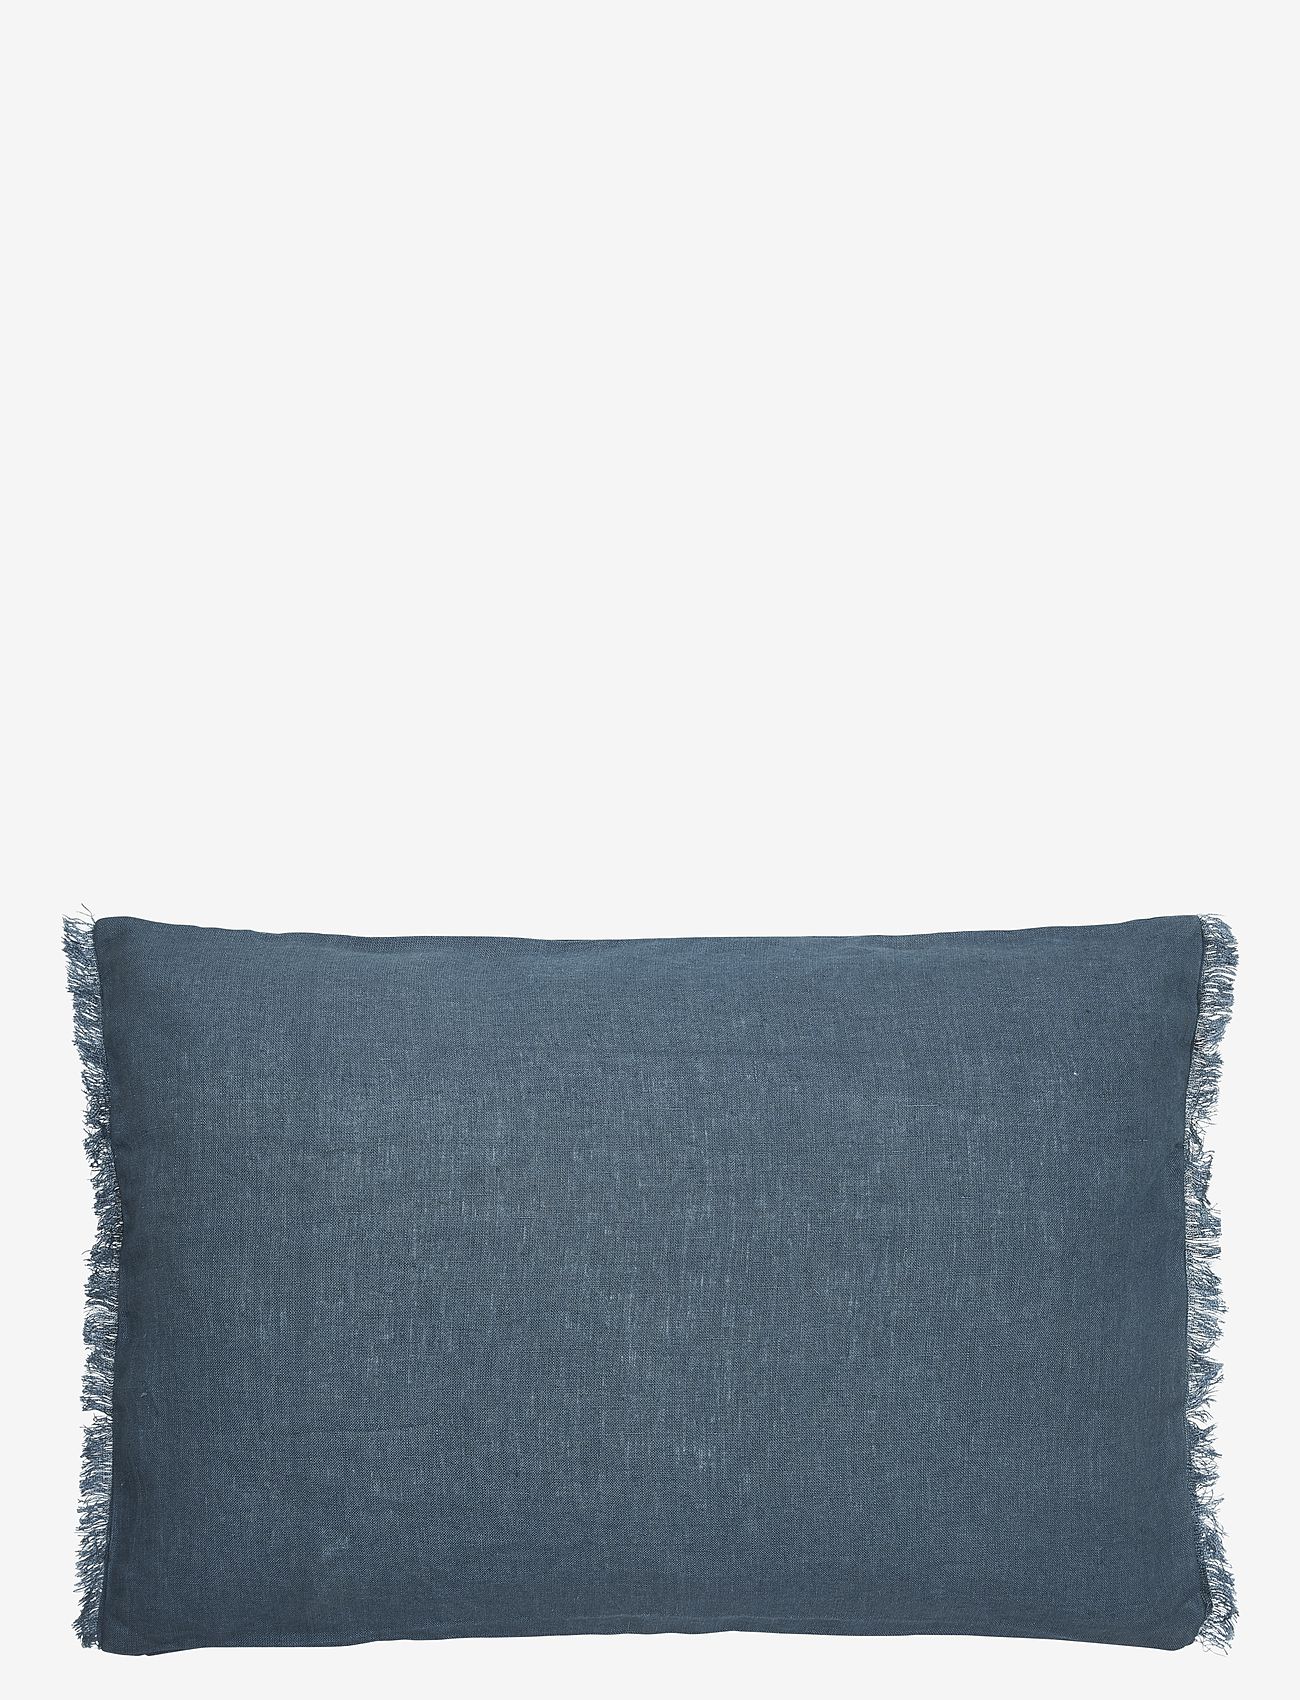 Boel & Jan - Cushion cover - Noa - cushion covers - blue - 0